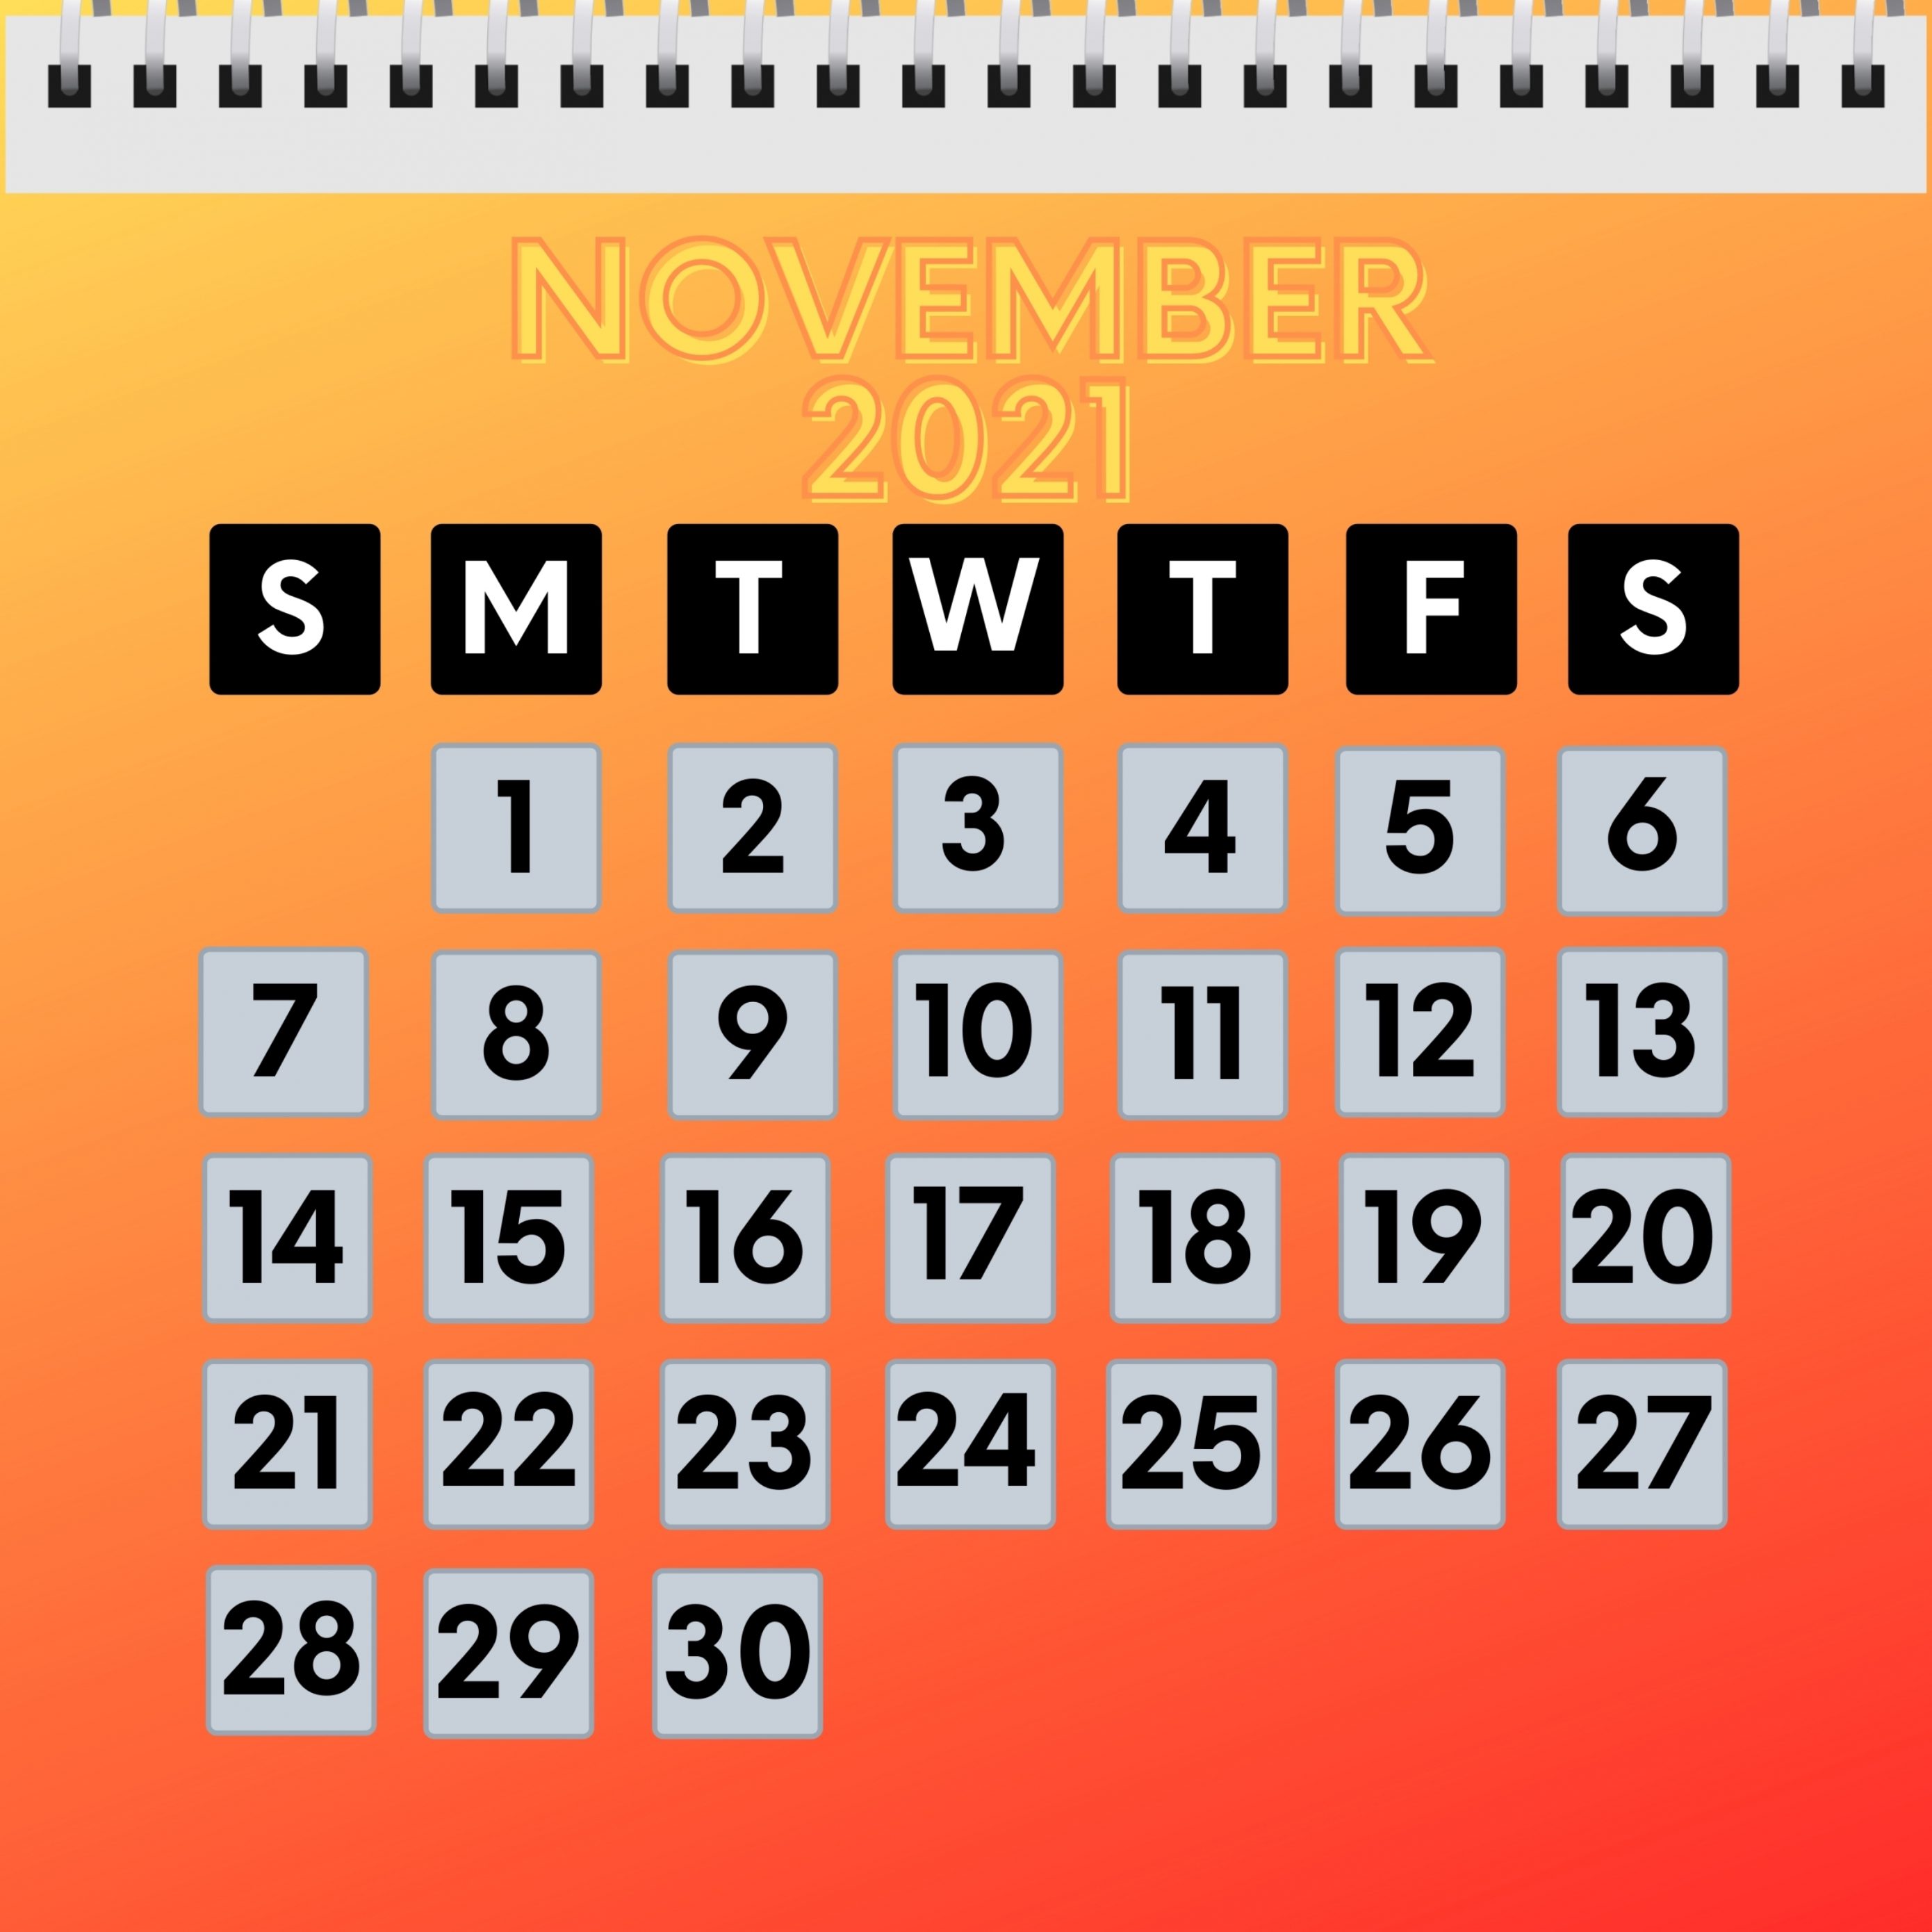 2780x2780 Parallax wallpaper 4k November 2021 Calendar iPad Wallpaper 2780x2780 pixels resolution